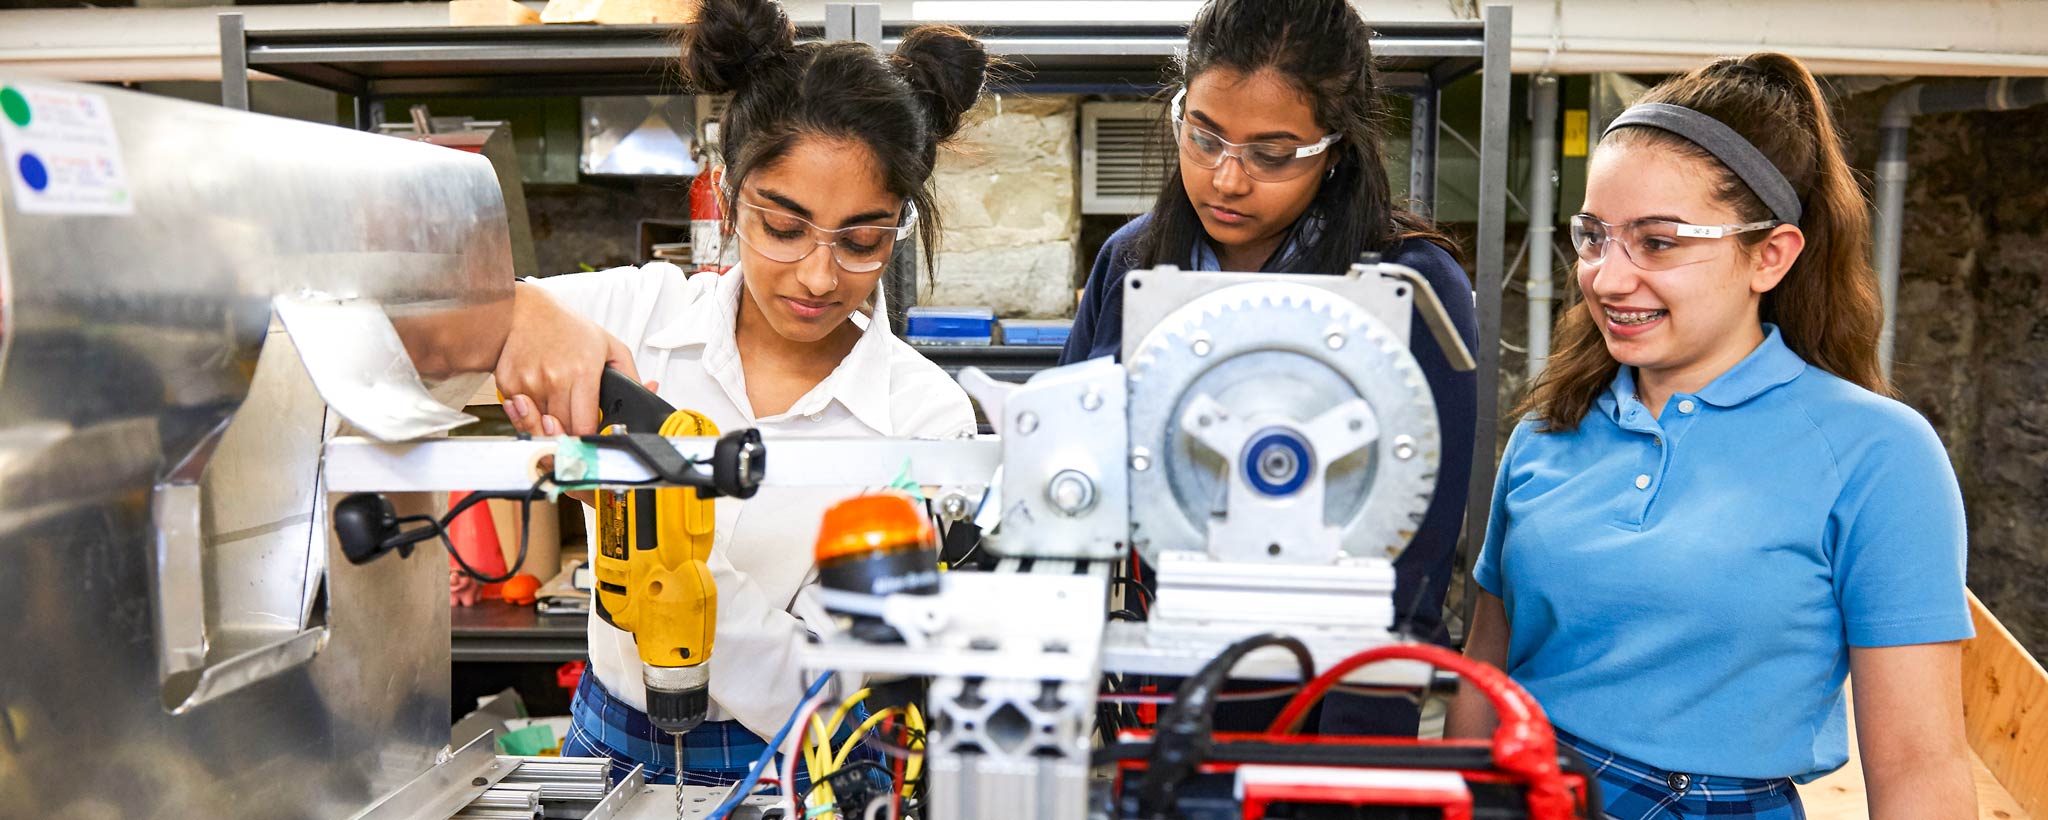 Girls in school learning engineering